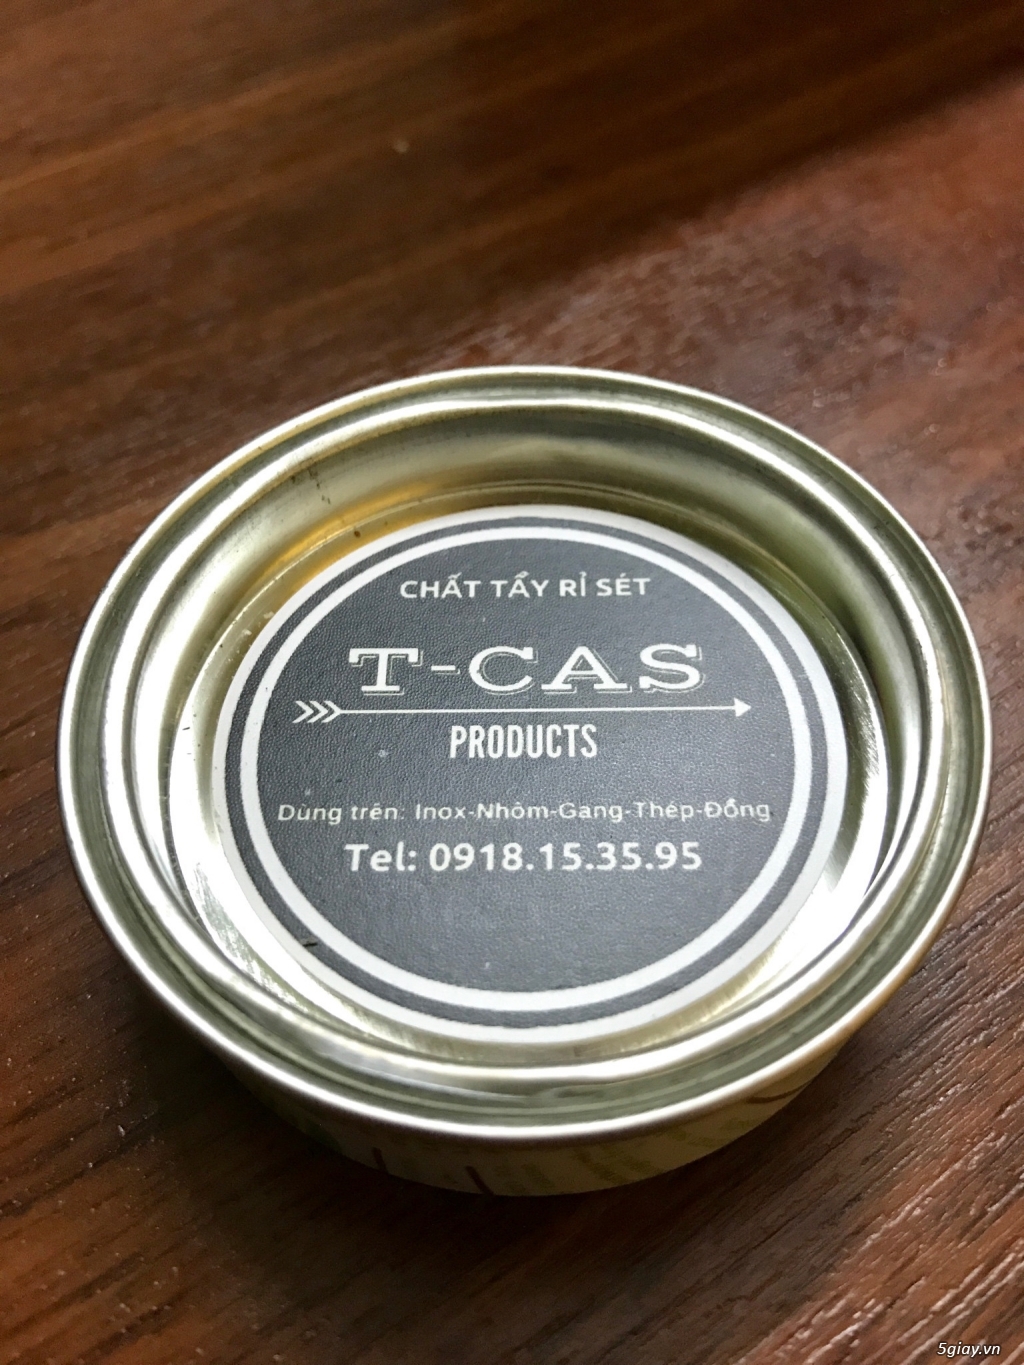 T-CAS: Chất tẩy rỉ sét - đánh bóng hiệu quả trên inox và kim loại. - 28